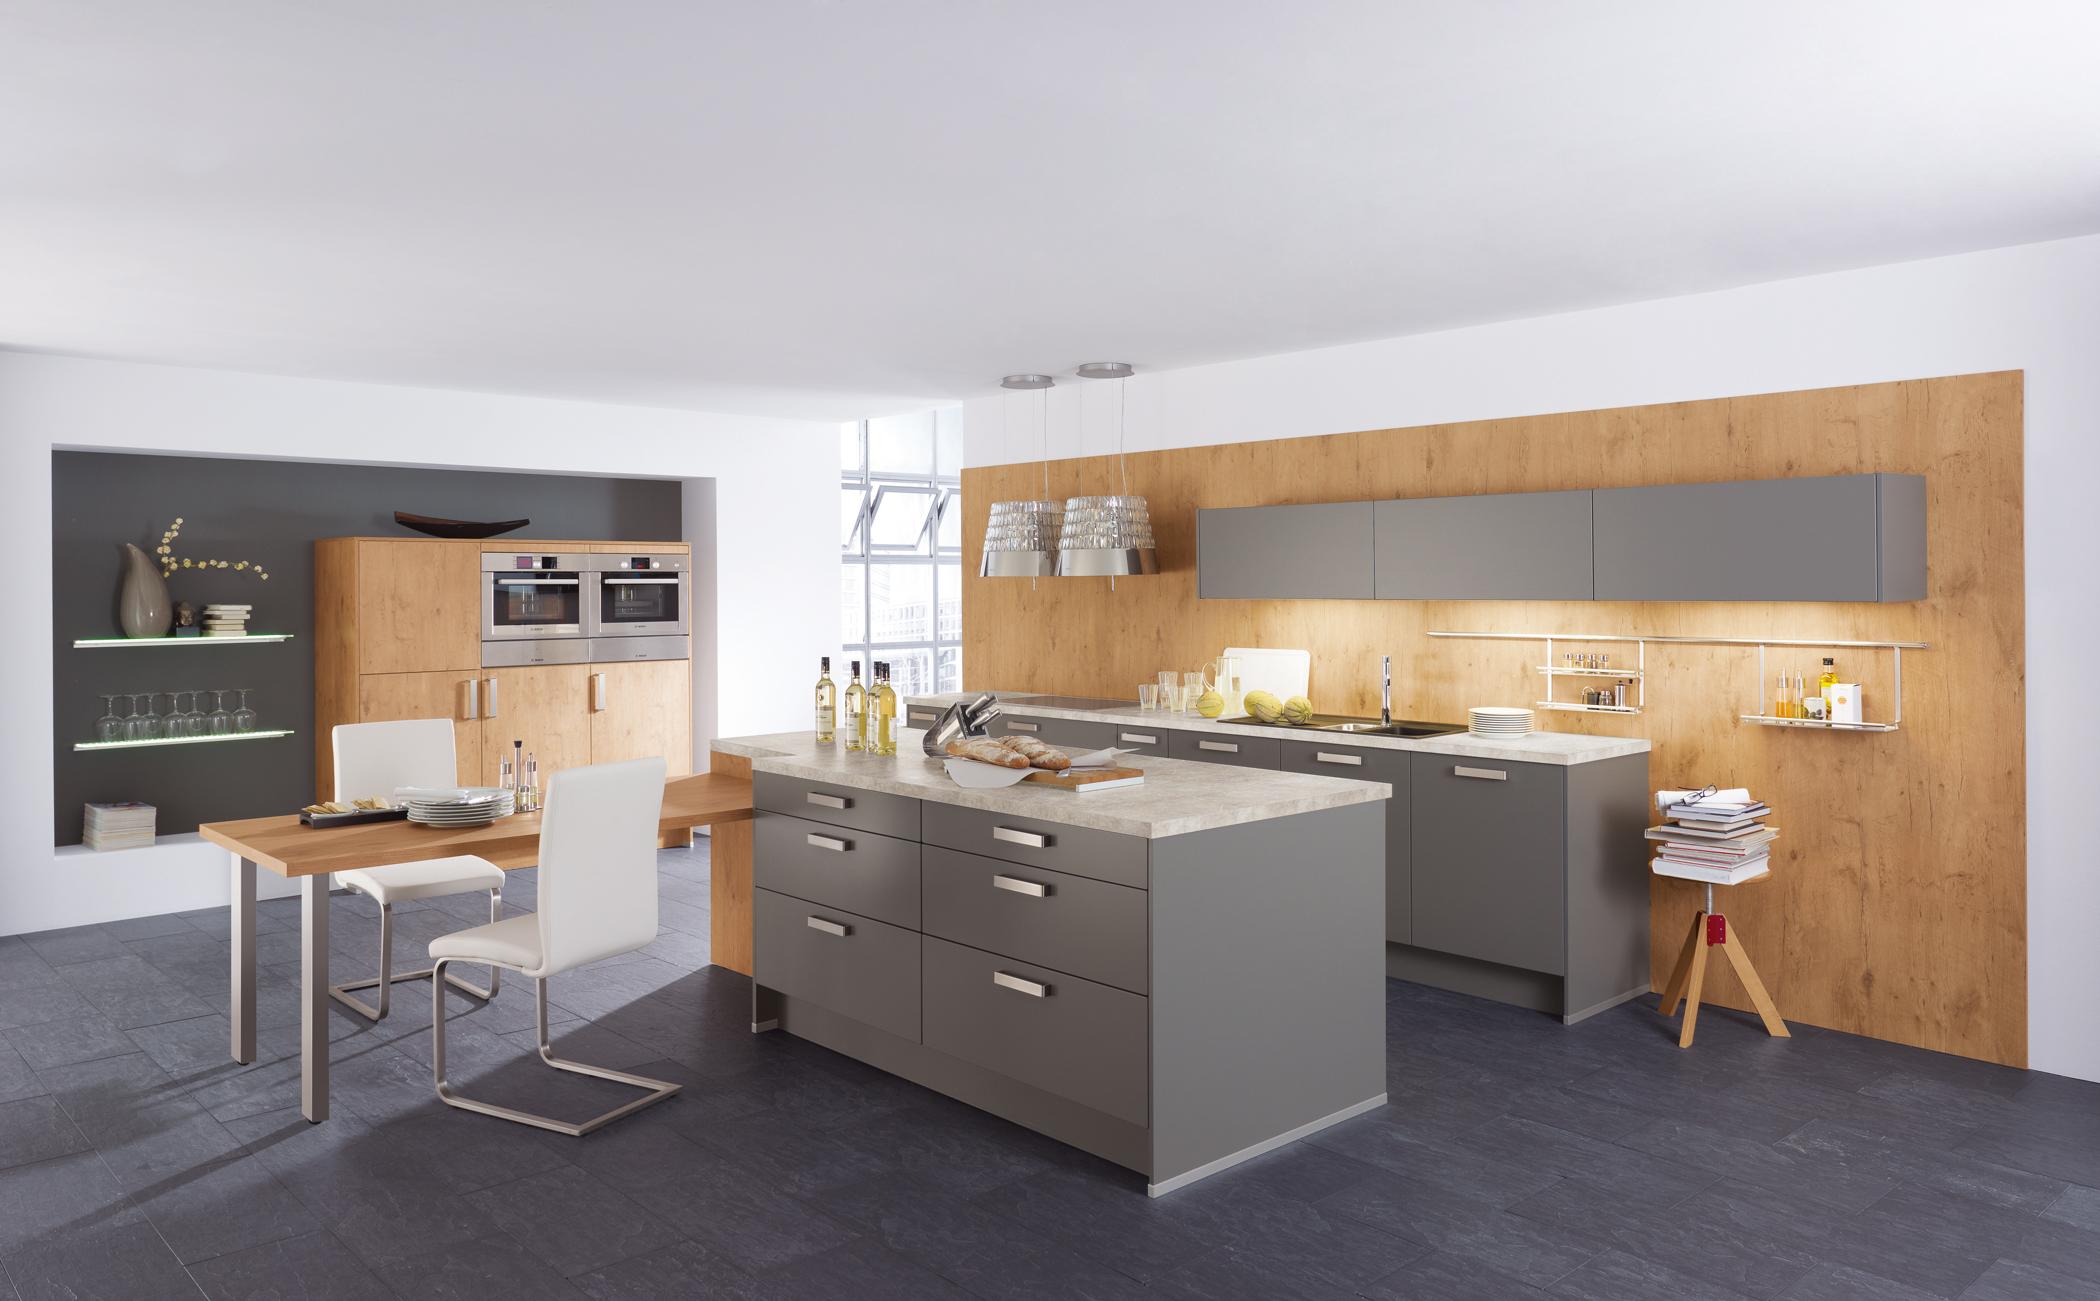 Wohnküche mit grauen Küchenschränken #wandverkleidung #esstisch #holzverkleidung #kücheninsel #grauerbodenbelag #holzwandverkleidung ©Wellmann/Alno AG